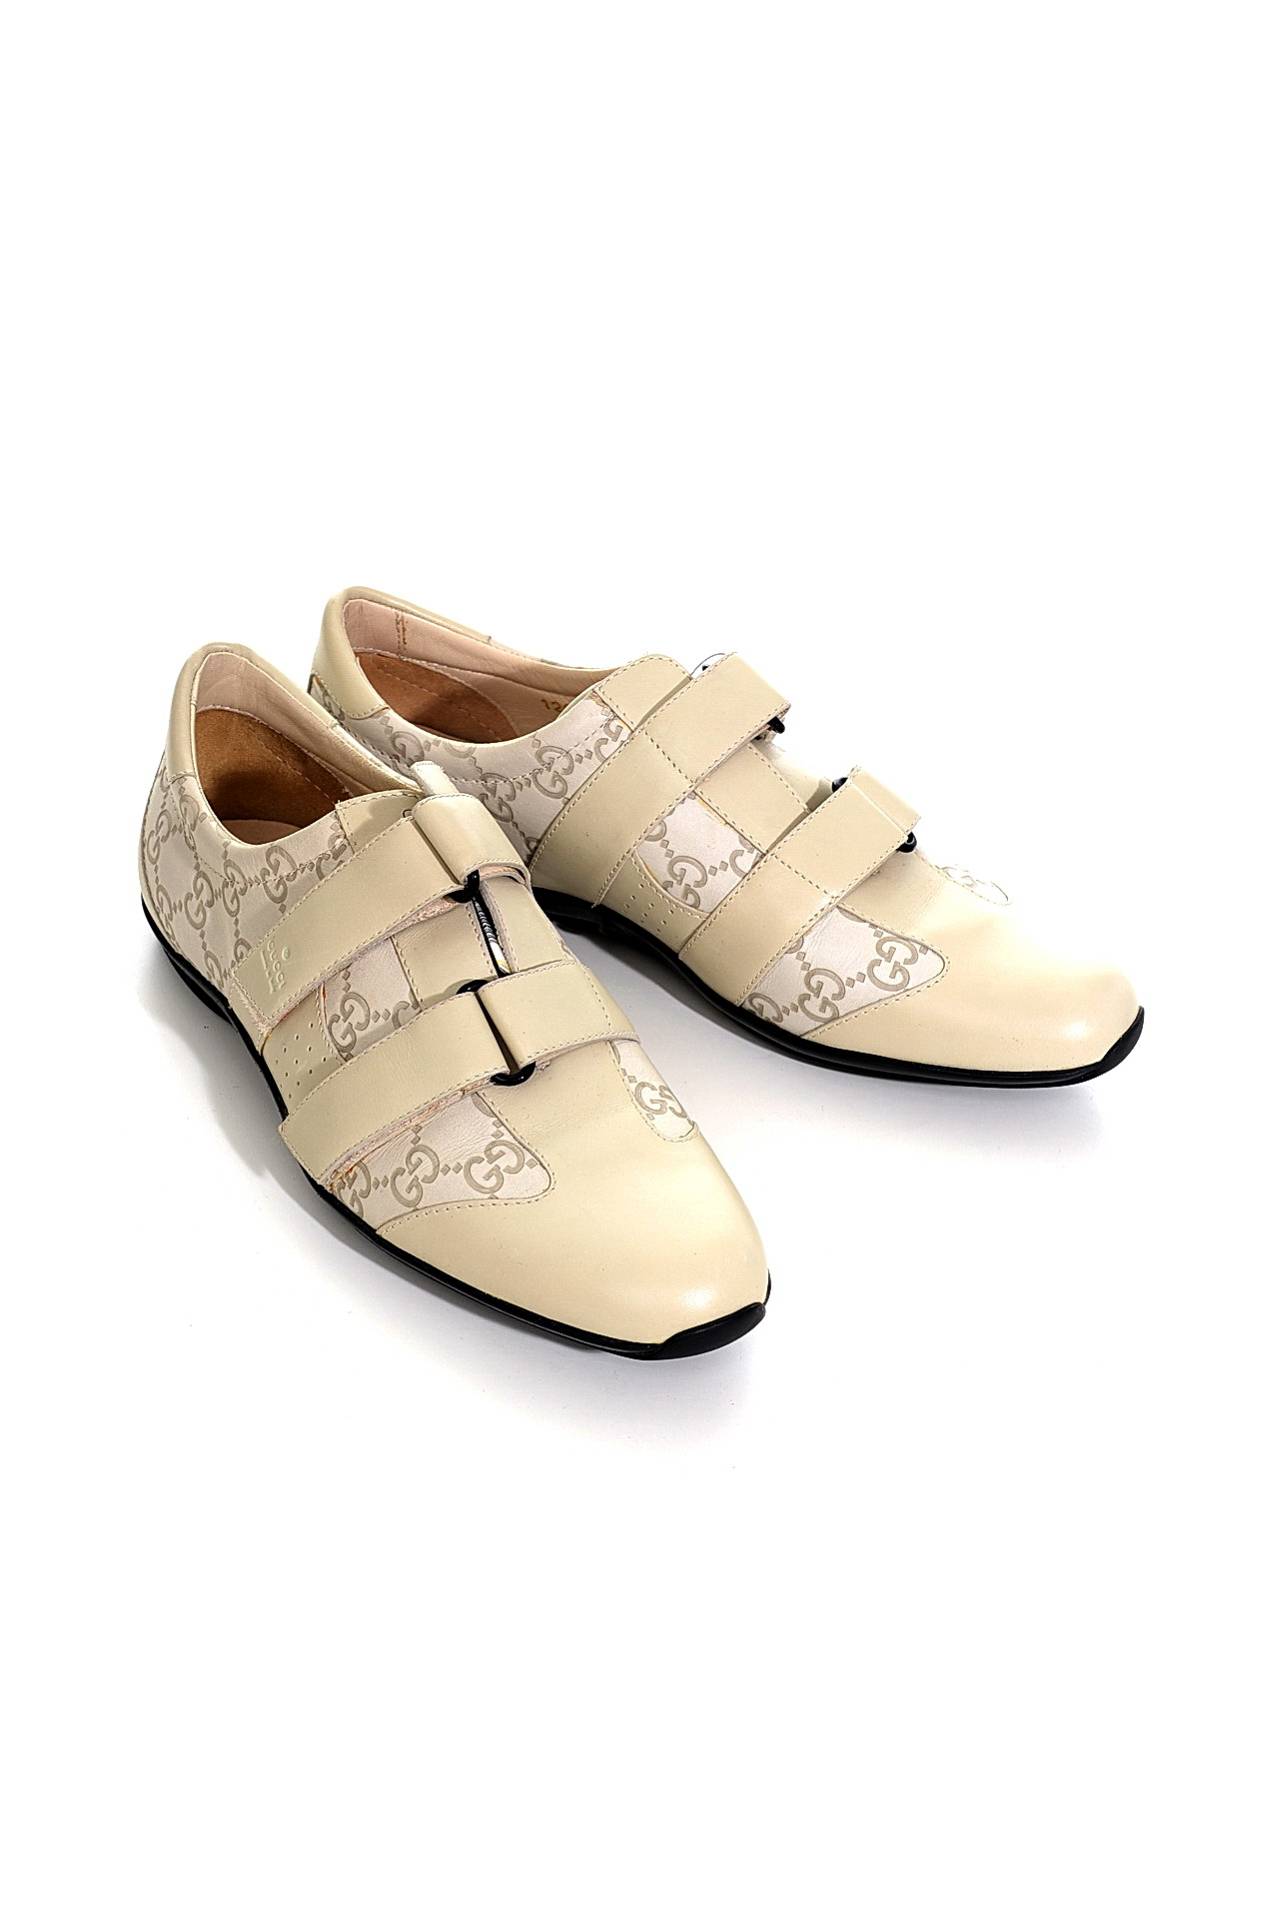 Обувь женская Кроссовки GUCCI (121830/0010). Купить за 14750 руб.